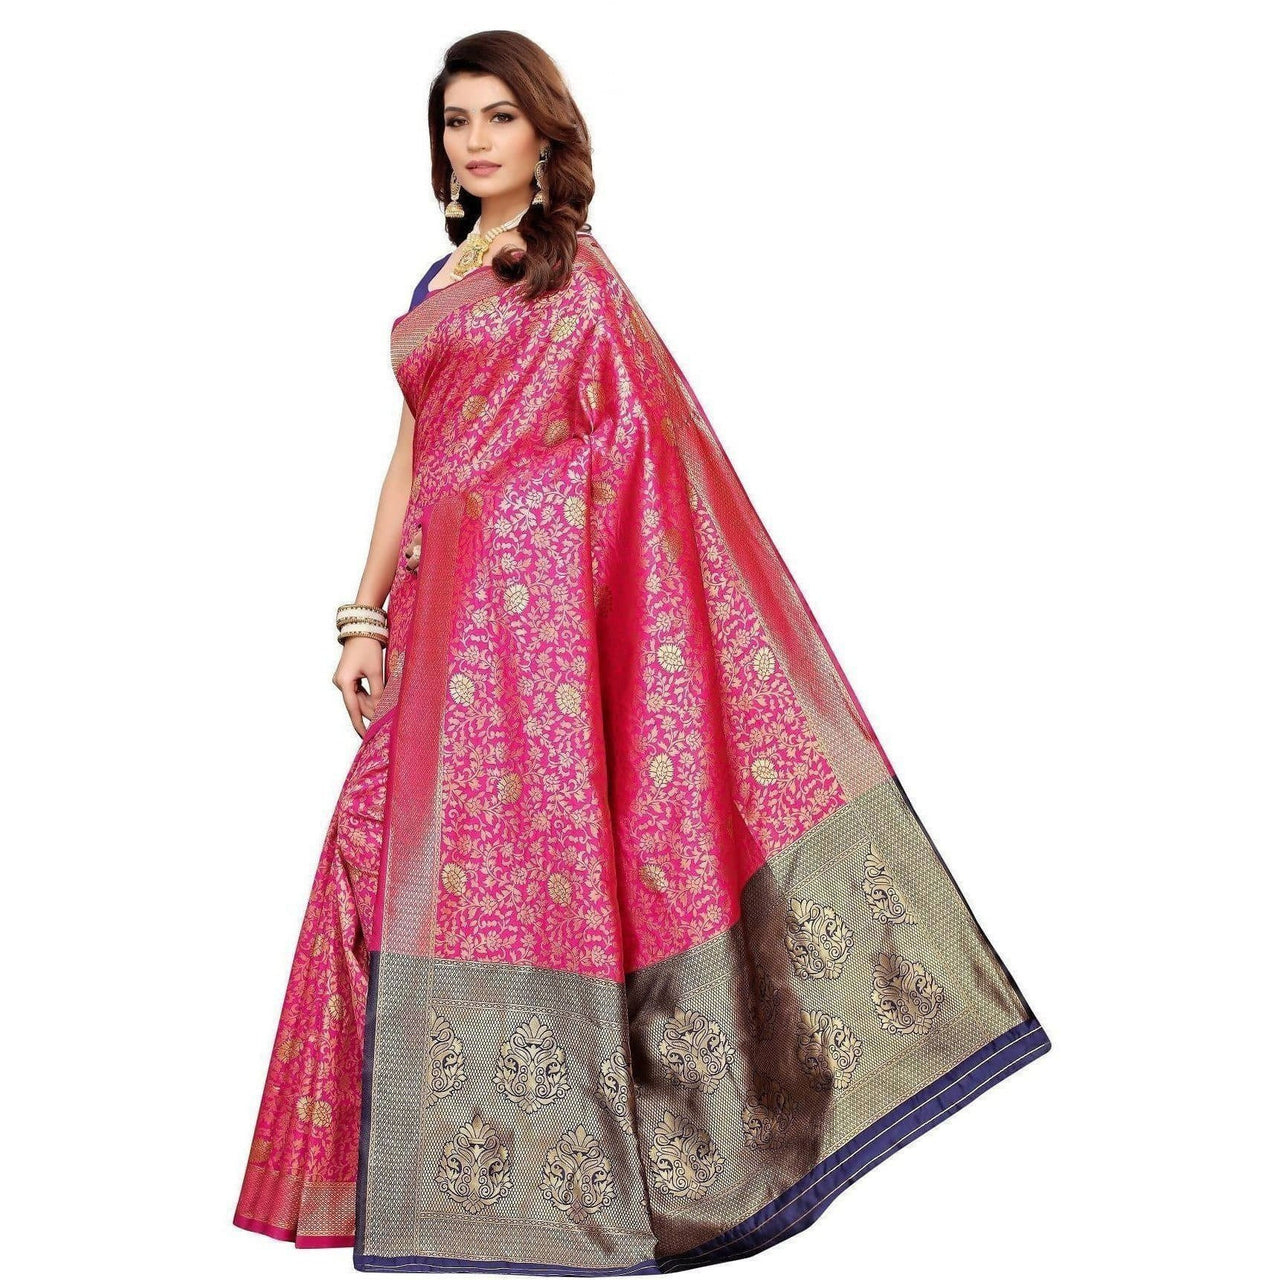 Vamika Banarasi Jaquard Pink Weaving Saree (BANARASI 01)